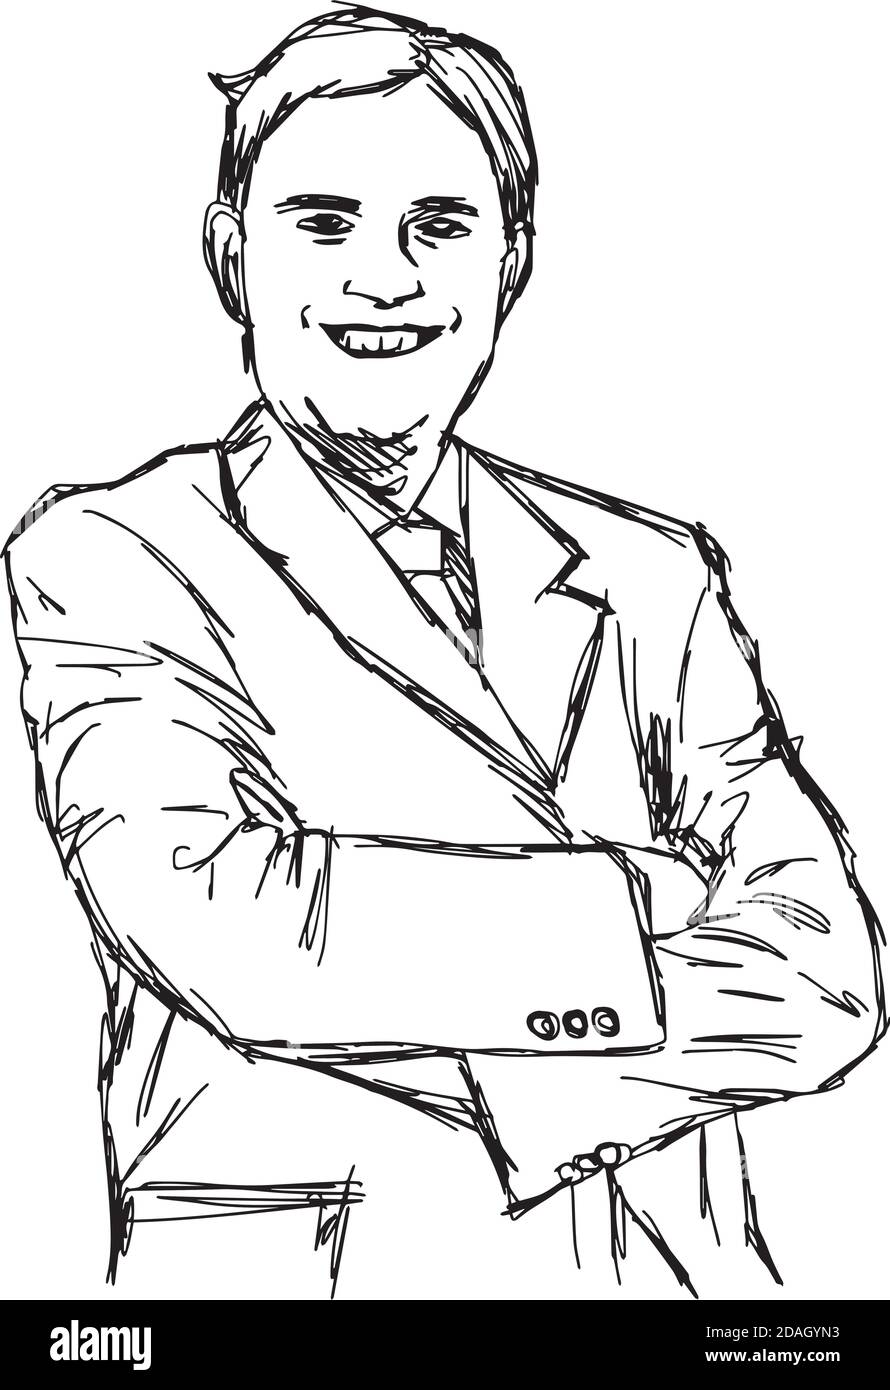 Illustration Vektor Doodle Hand gezeichnet von Skizze lächelnd fett Geschäftsmann mit gekreuzten Armen. Stock Vektor